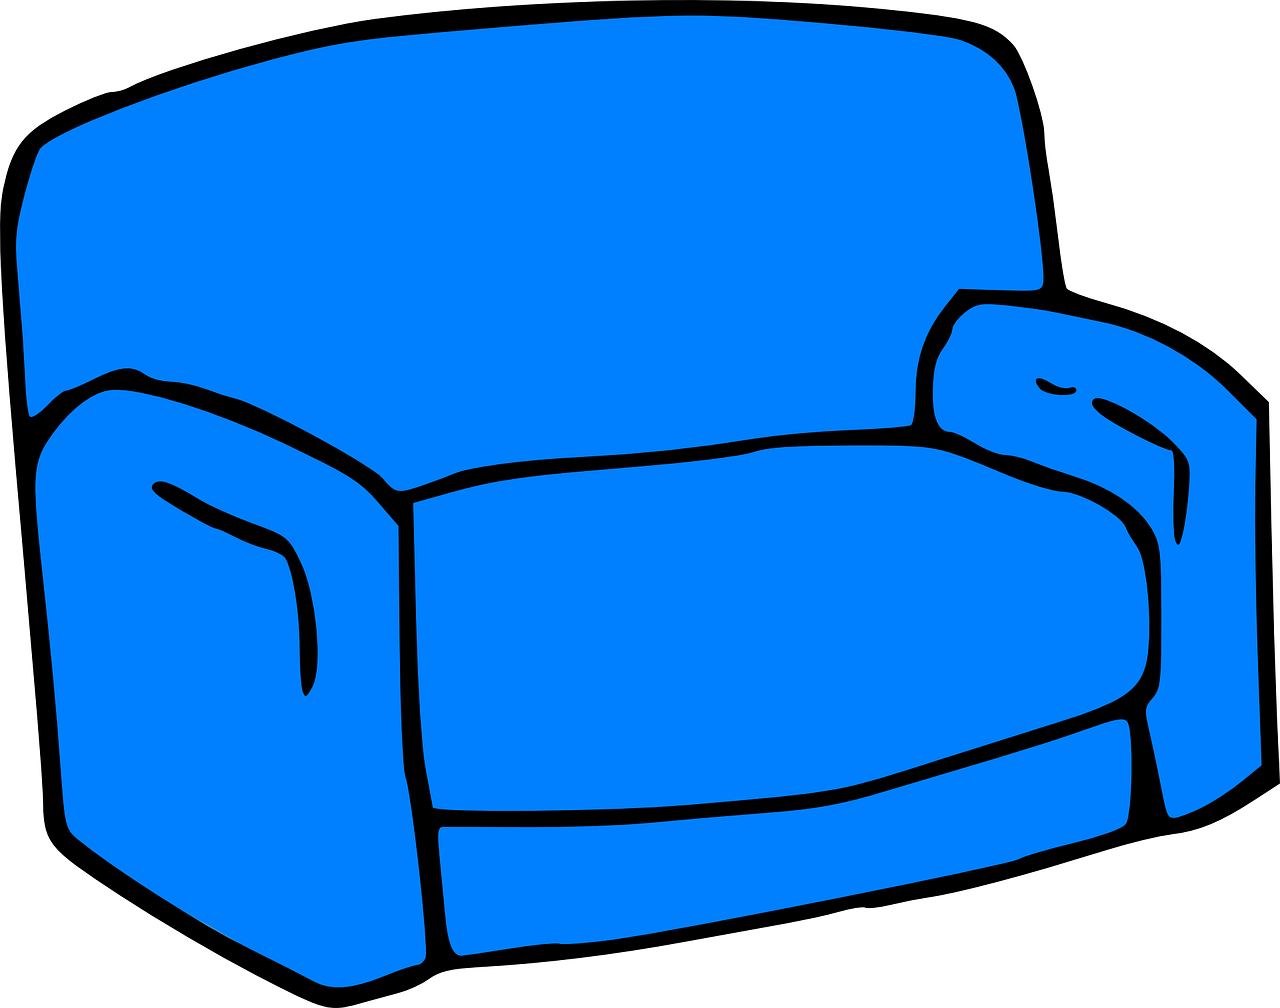 Кресло рисунок на прозрачном фоне